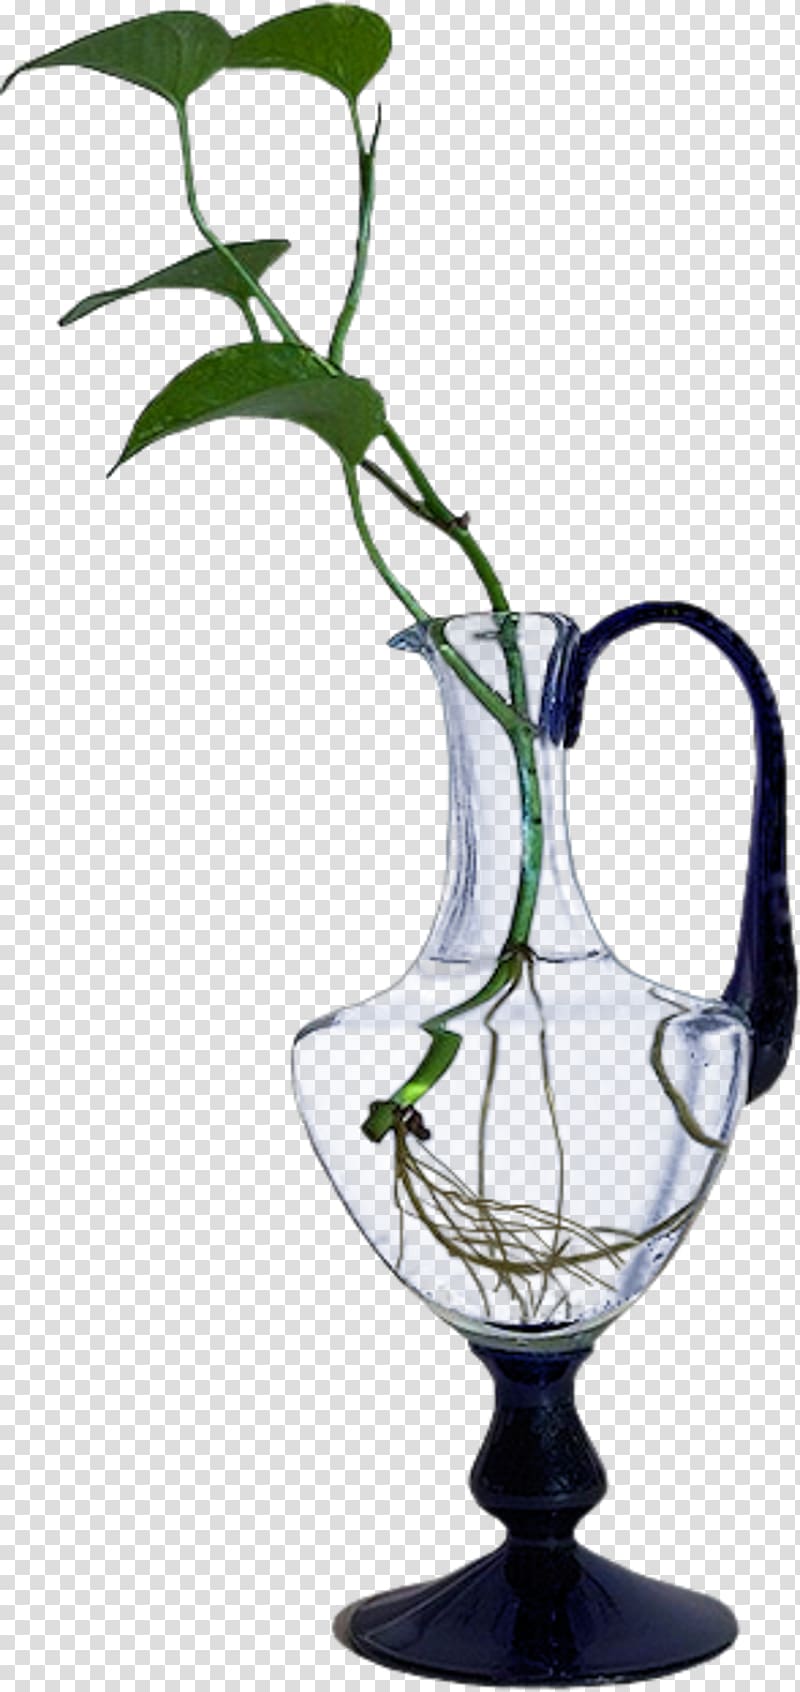 Flowerpot Wine glass Vase, decorative vase transparent background PNG clipart